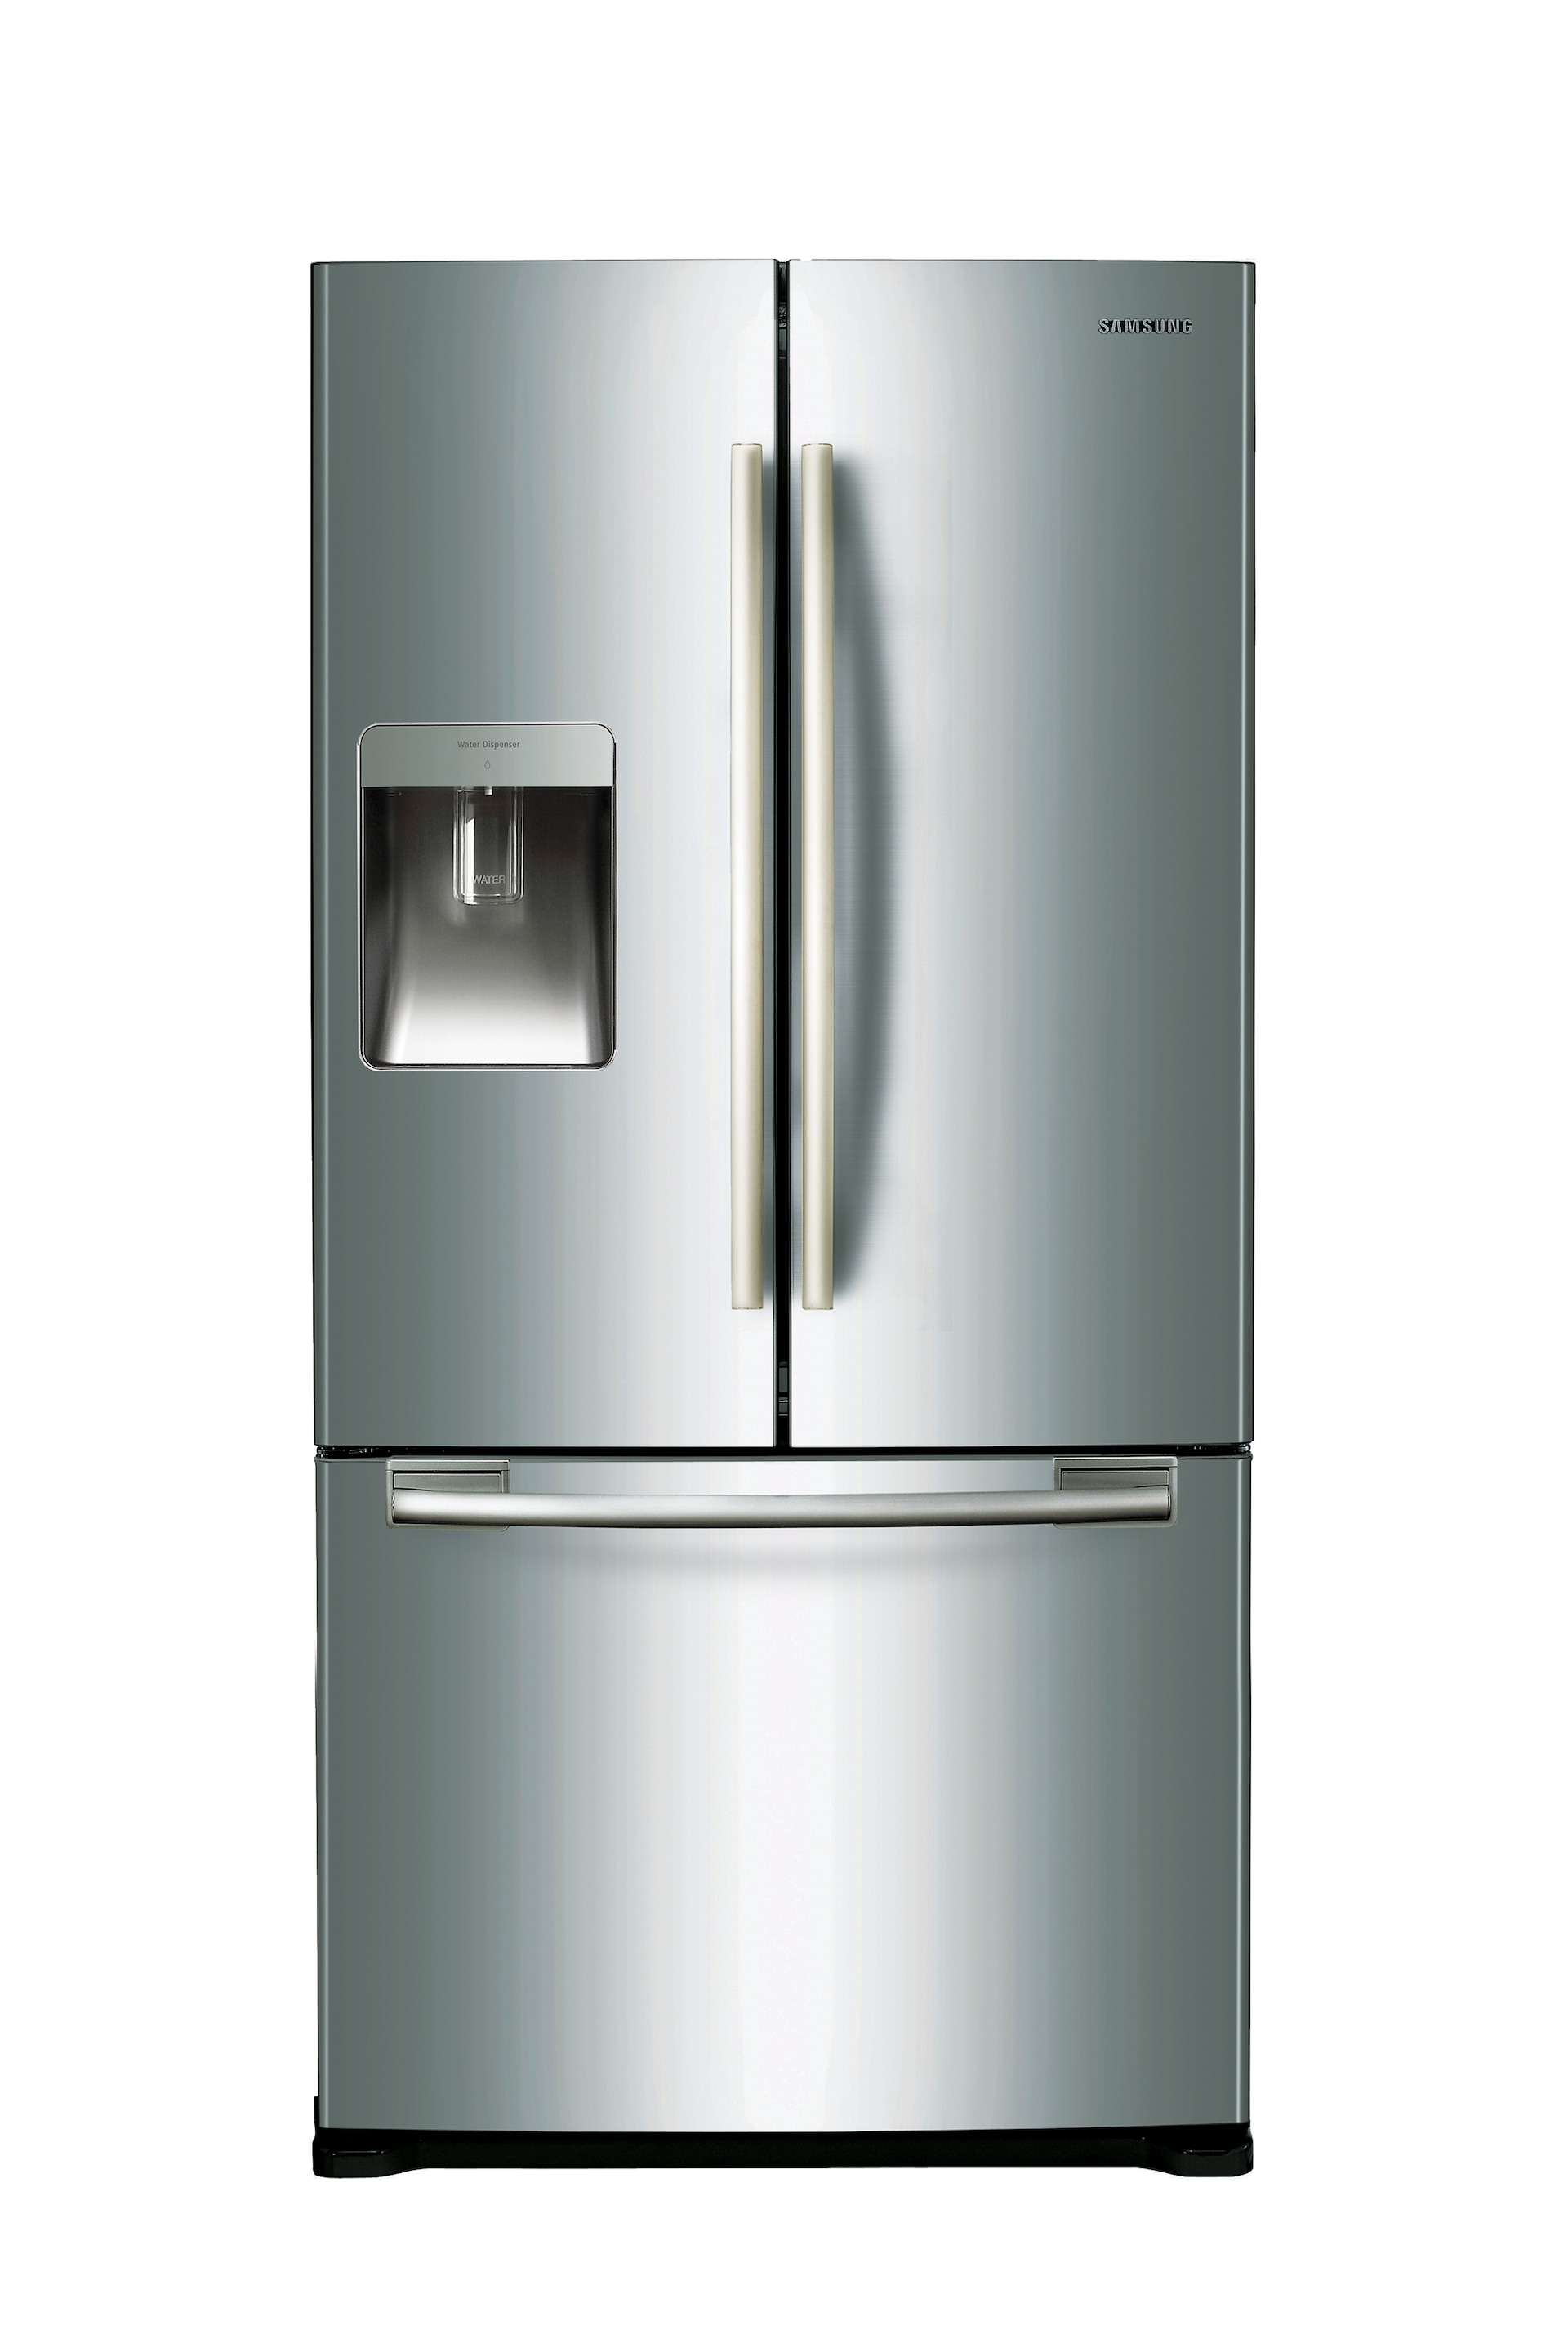 579L French Door Refrigerator - SRF579DLS | Samsung Support Australia2000 x 3000